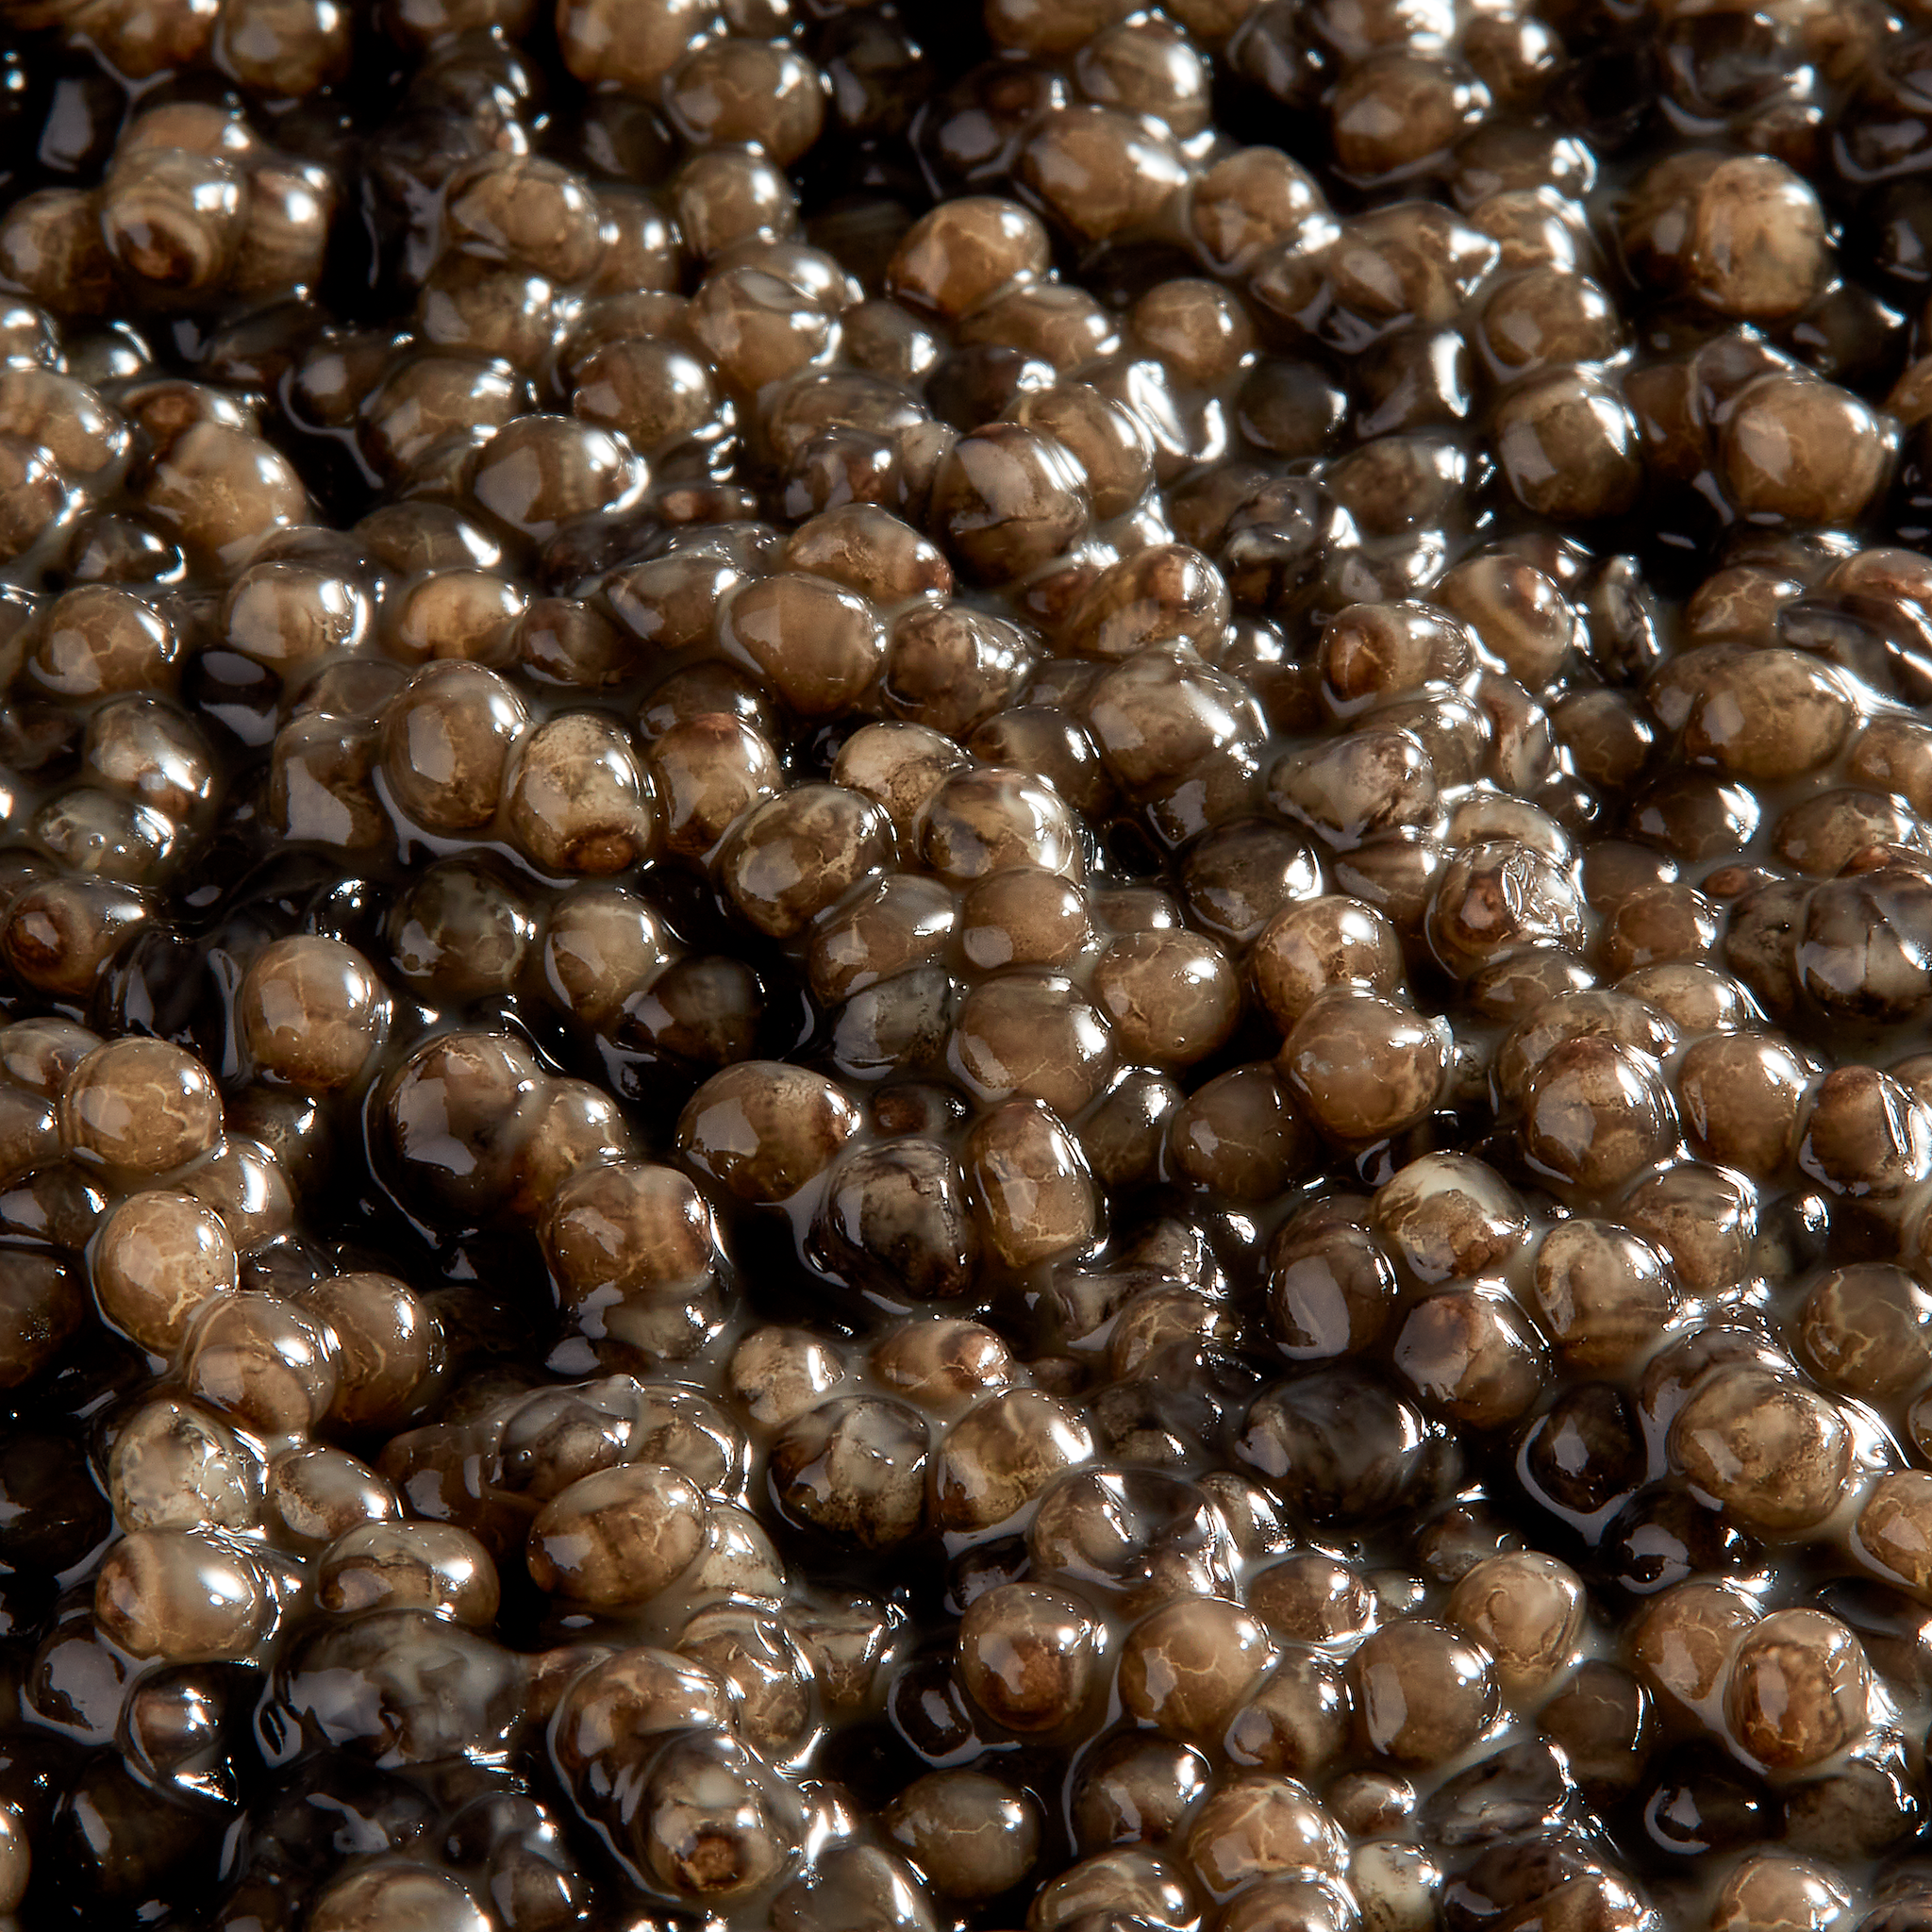 Caviar Beluga Royal